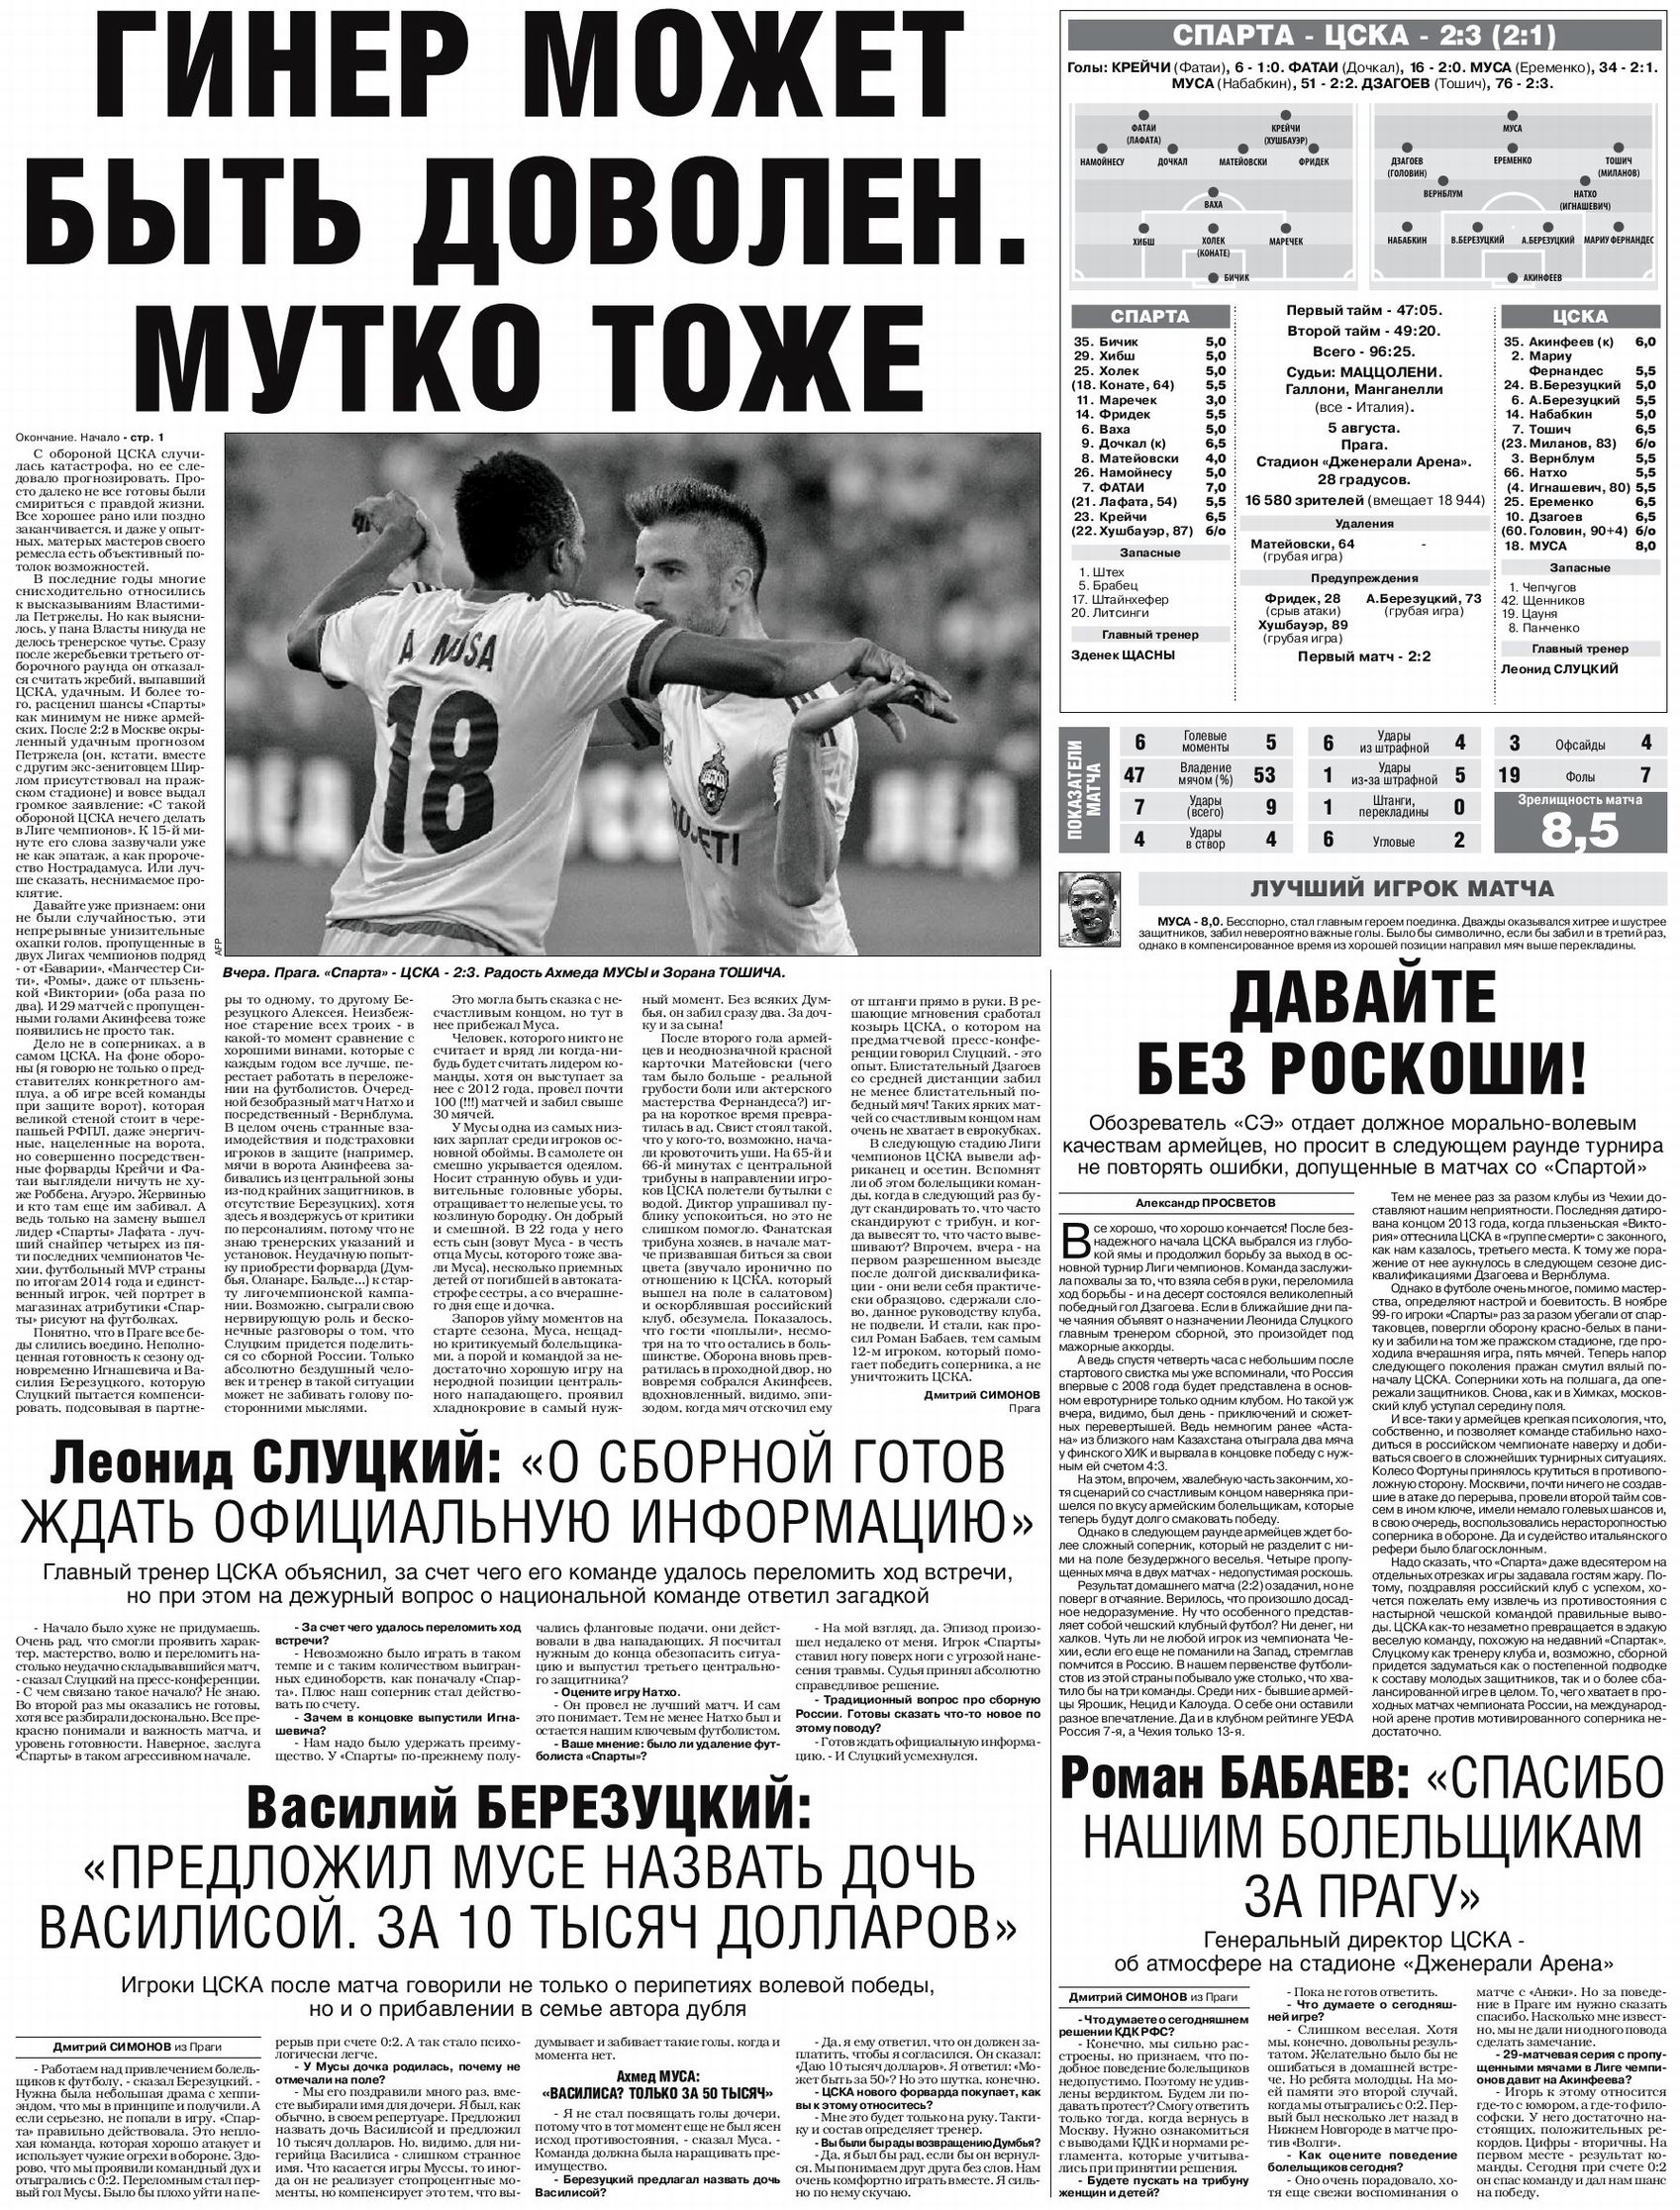 2015-08-05.Sparta-CSKA.1